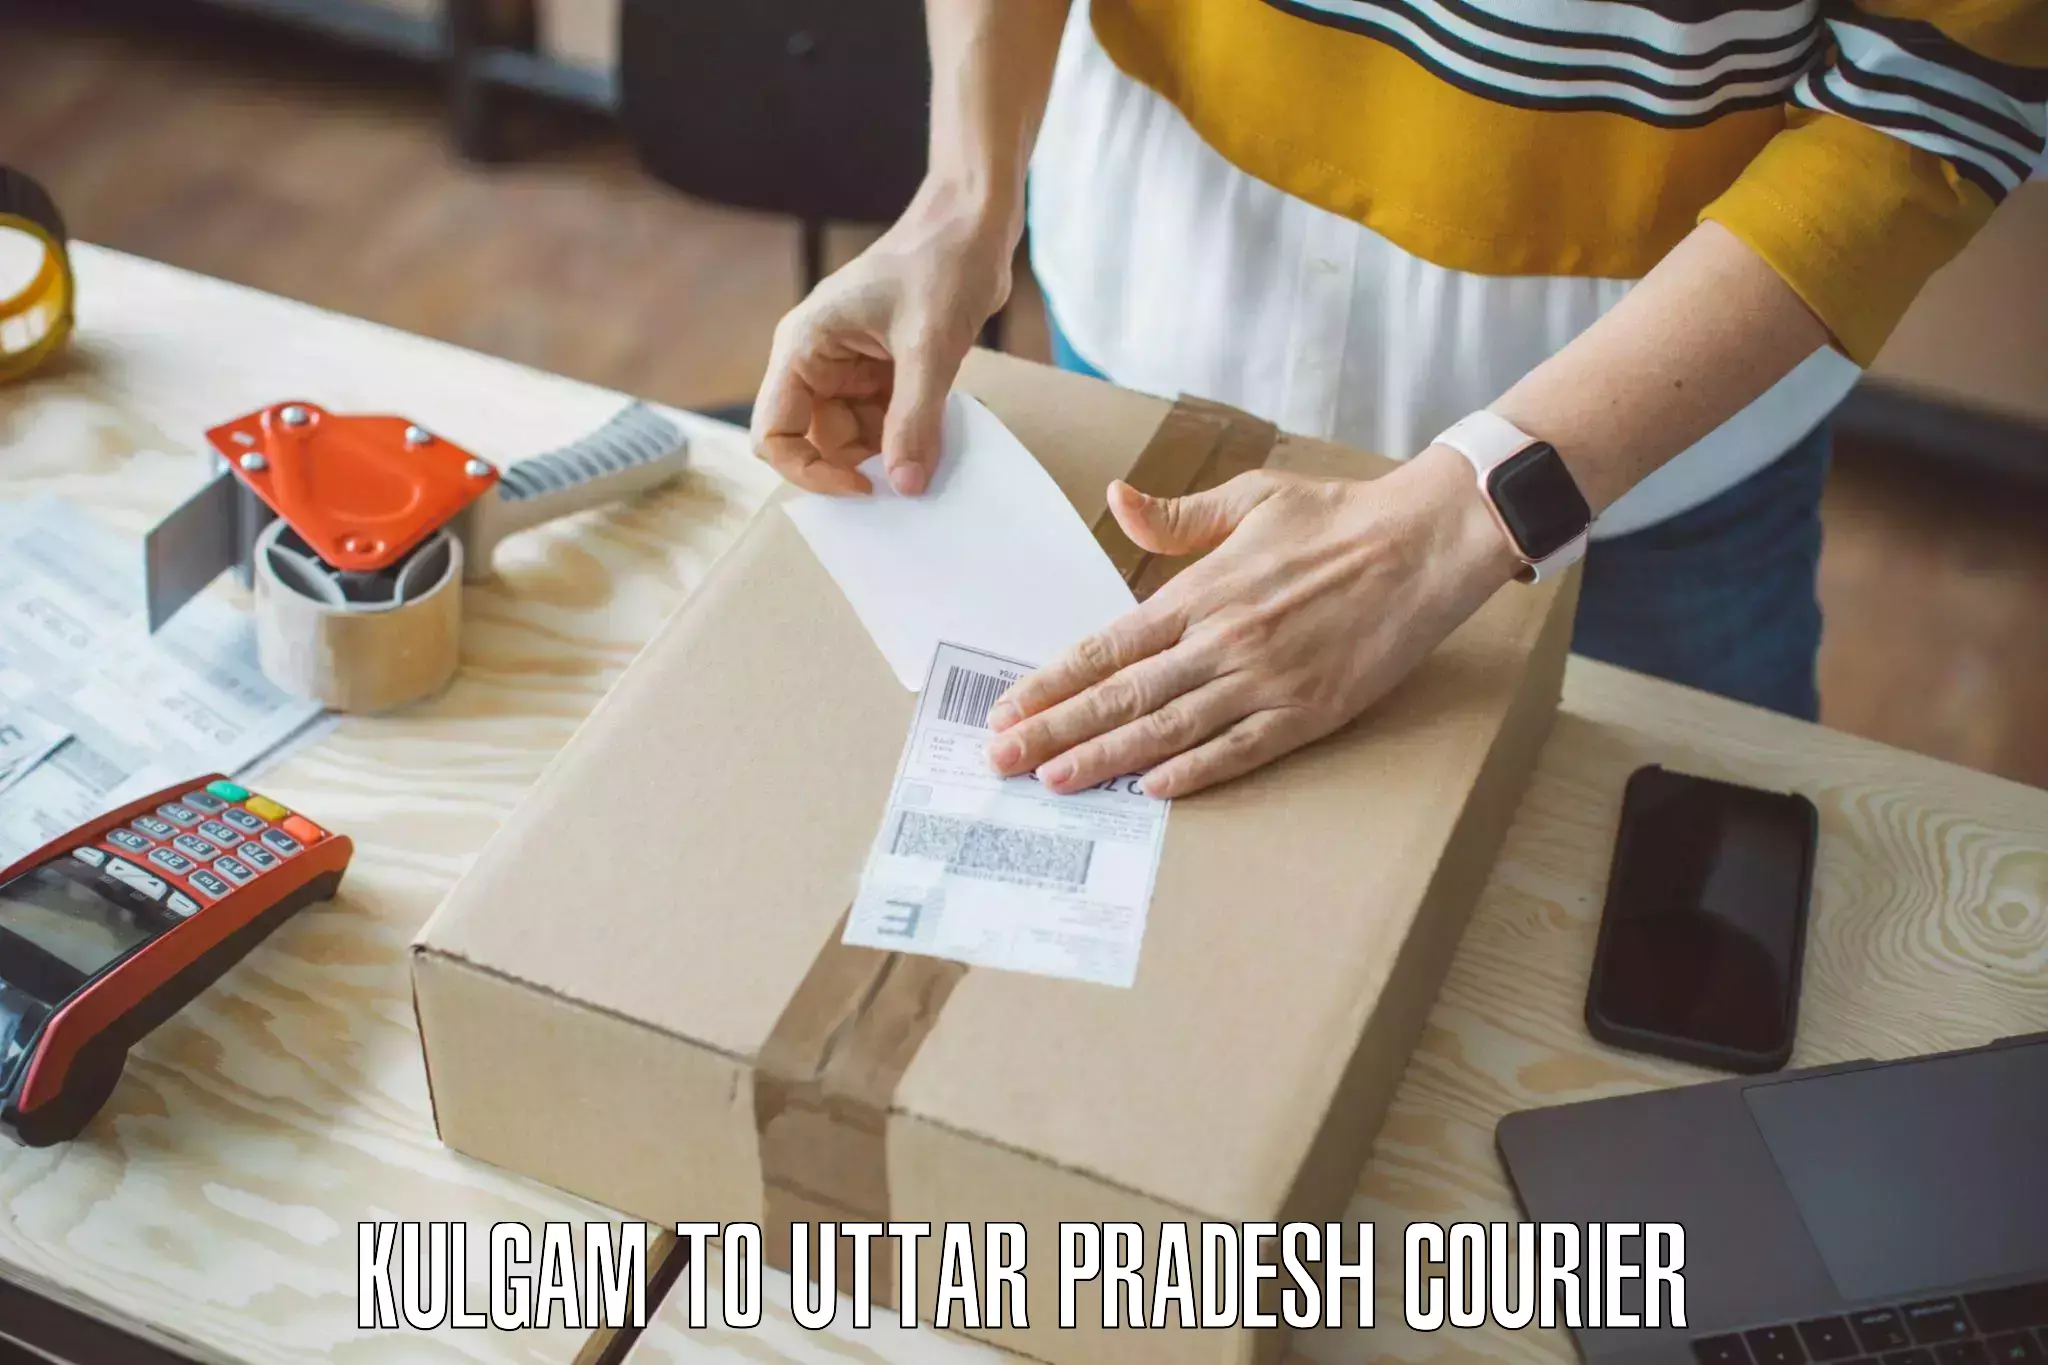 Personalized moving service Kulgam to Sikandrabad